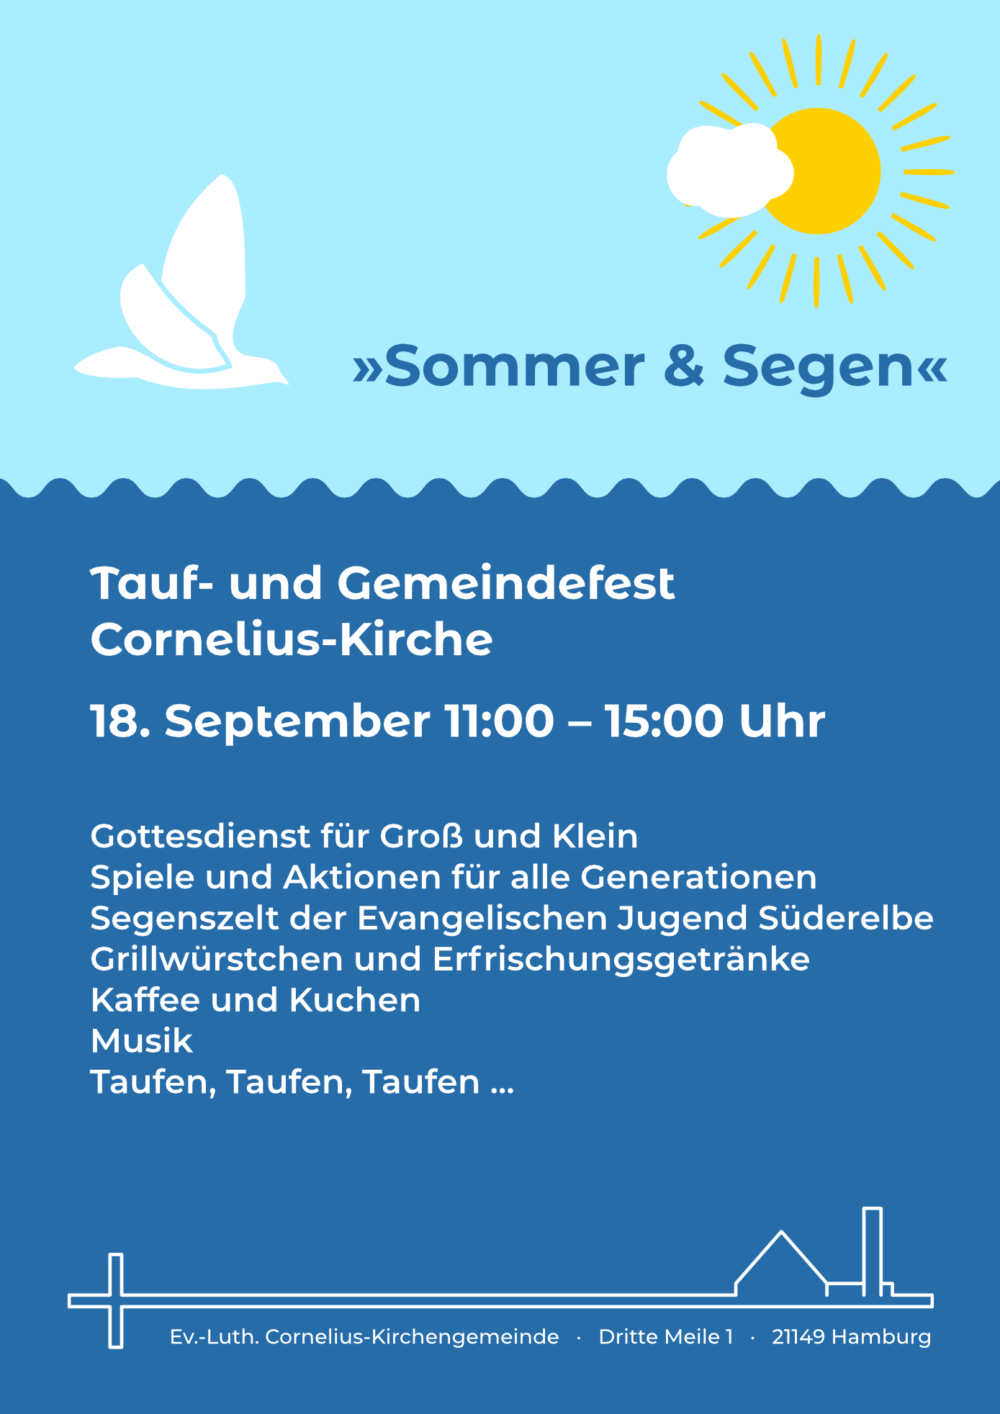 Plakat "Sommer & Segen"